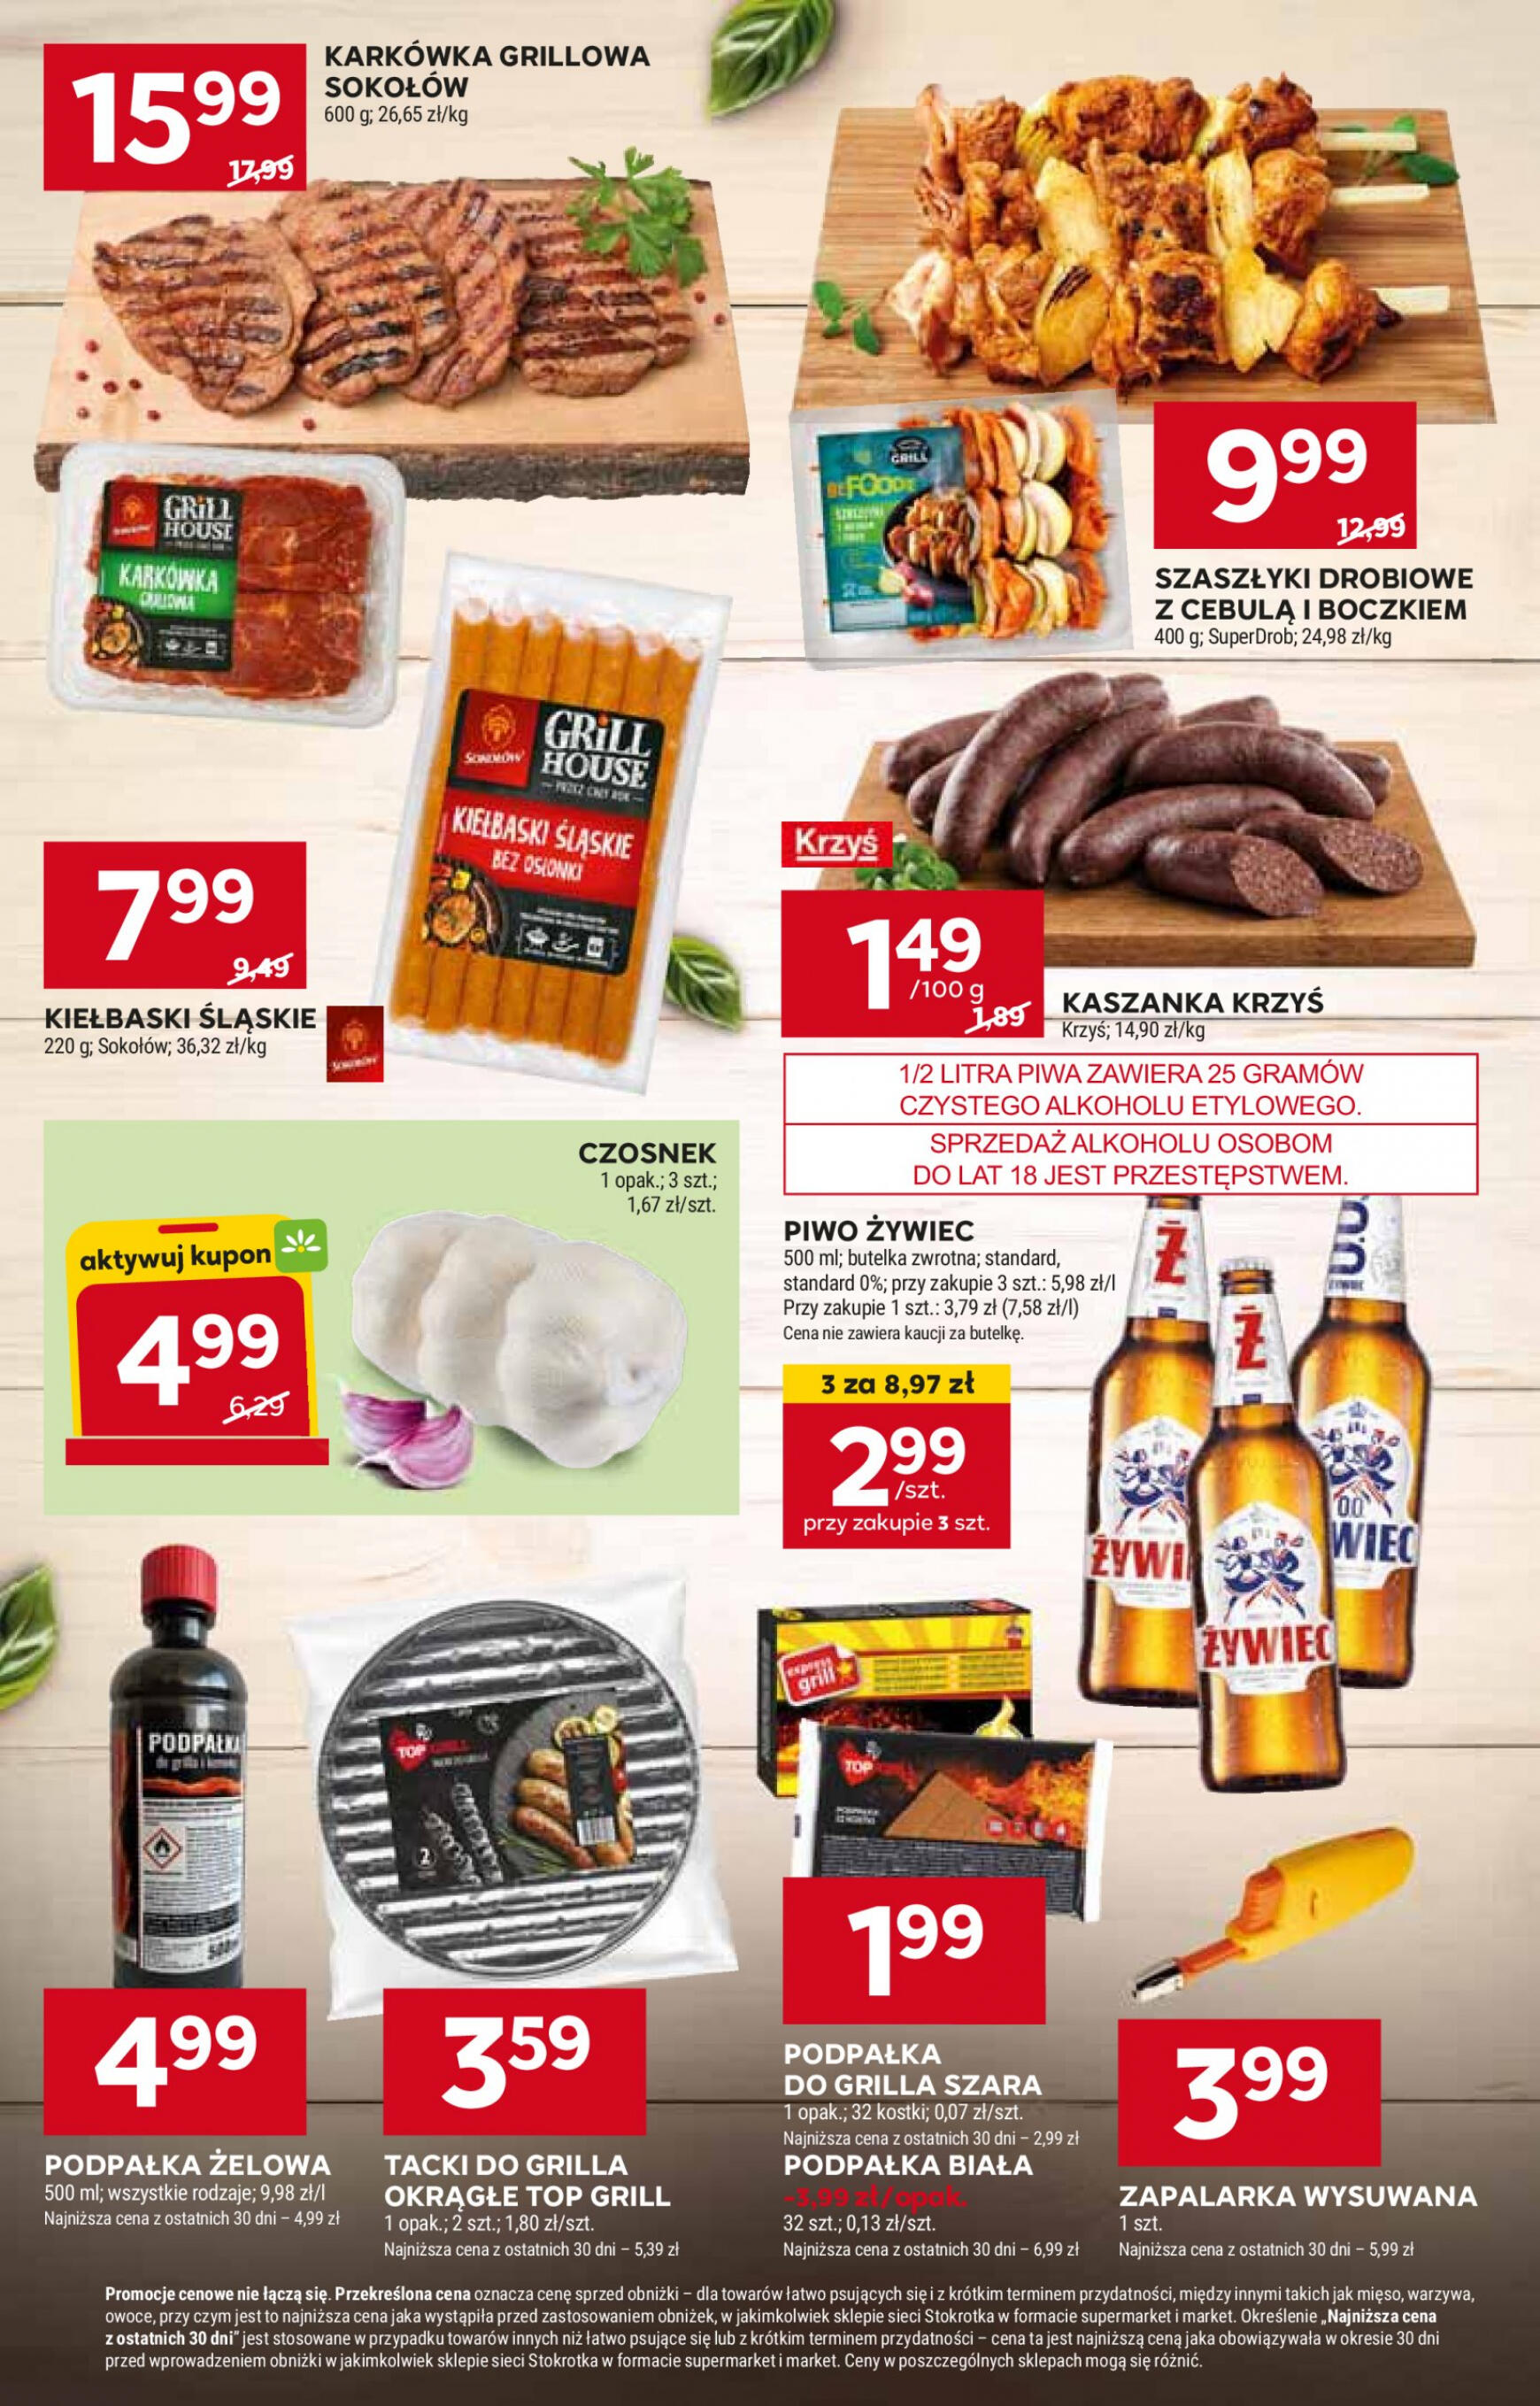 stokrotka - Stokrotka Supermarket gazetka aktualna ważna od 30.04. - 08.05. - page: 6